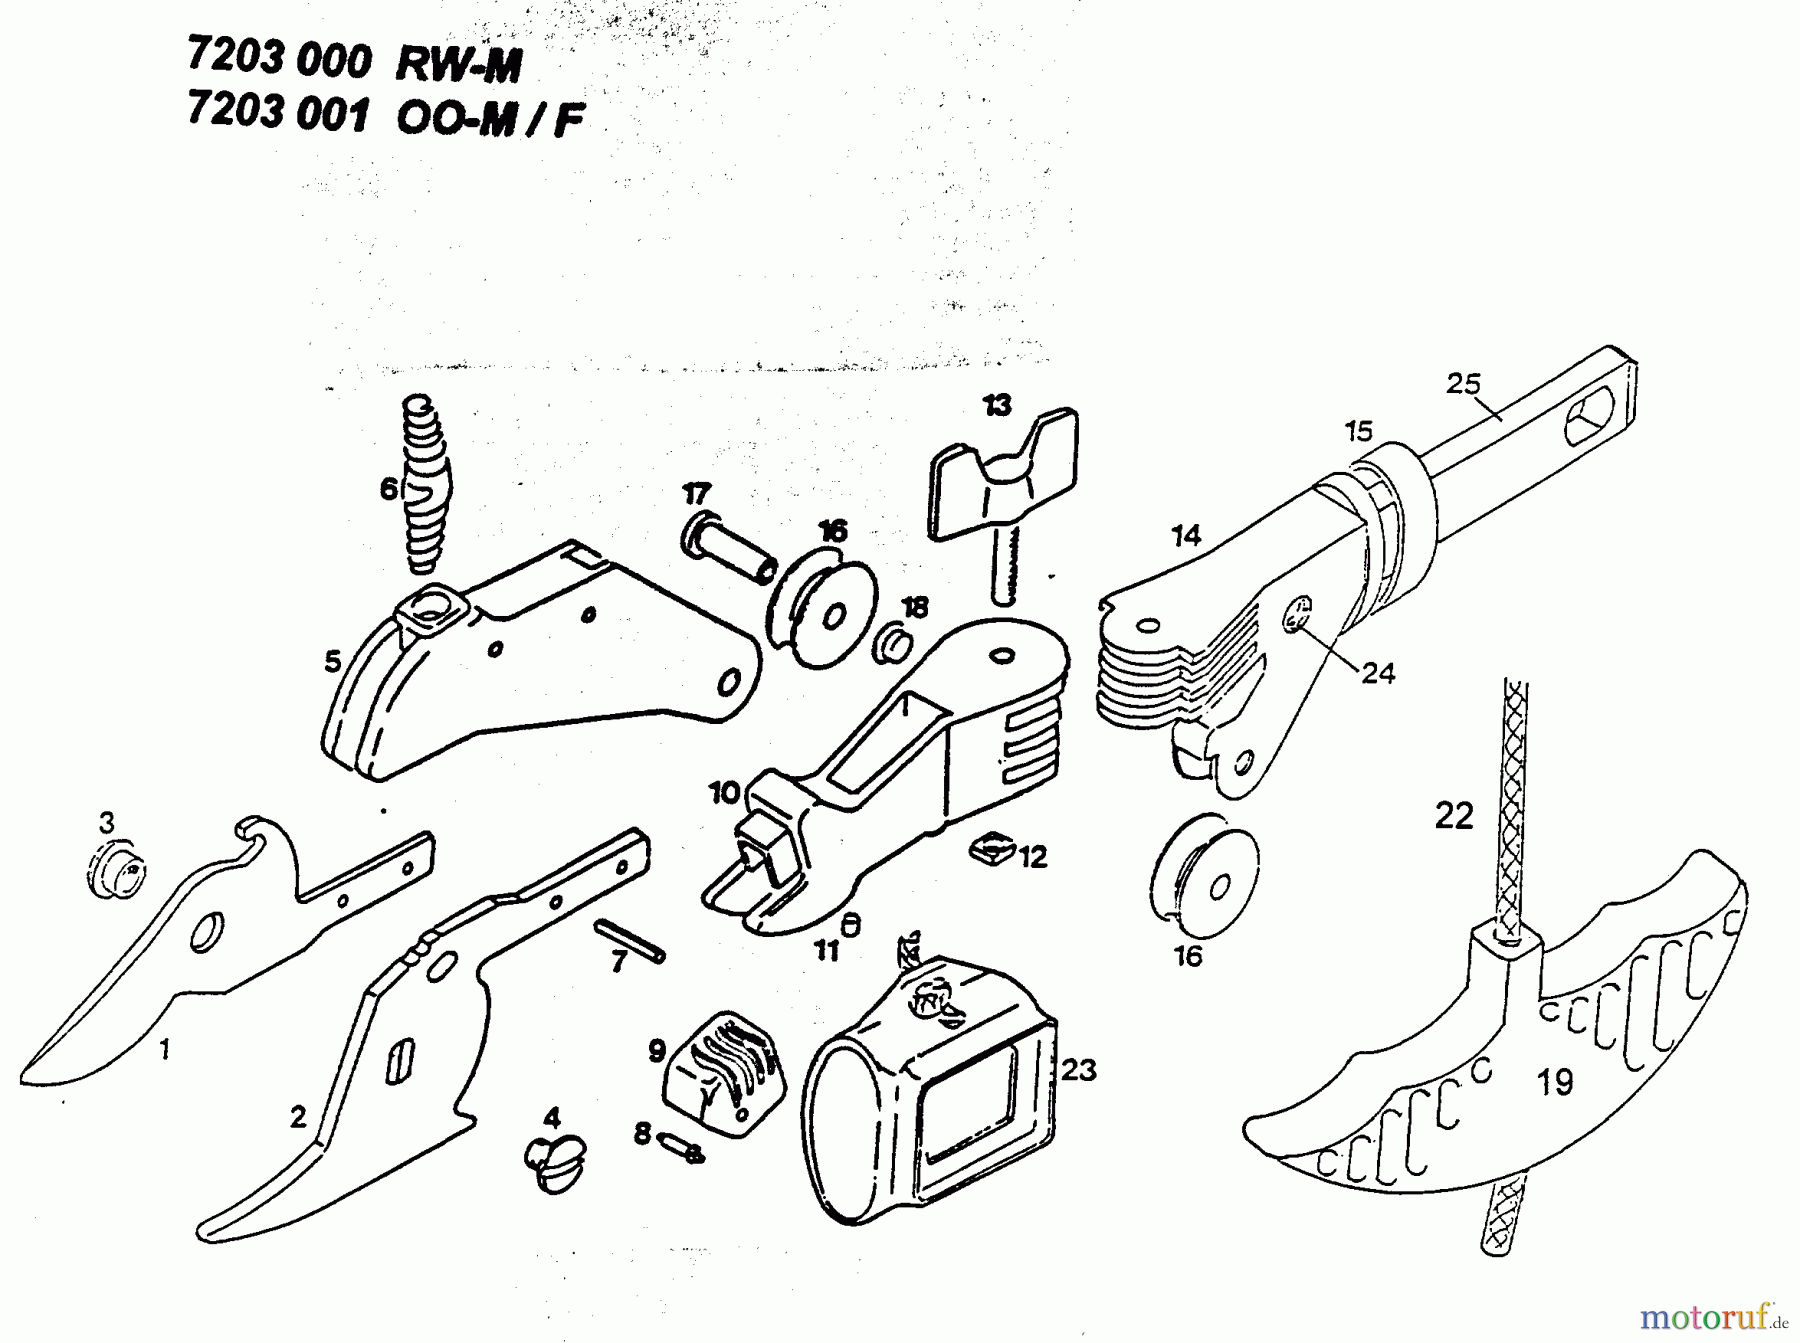  Wolf-Garten  multi-star ciseaux étang RW-M 7203000  (1996) Machine de base